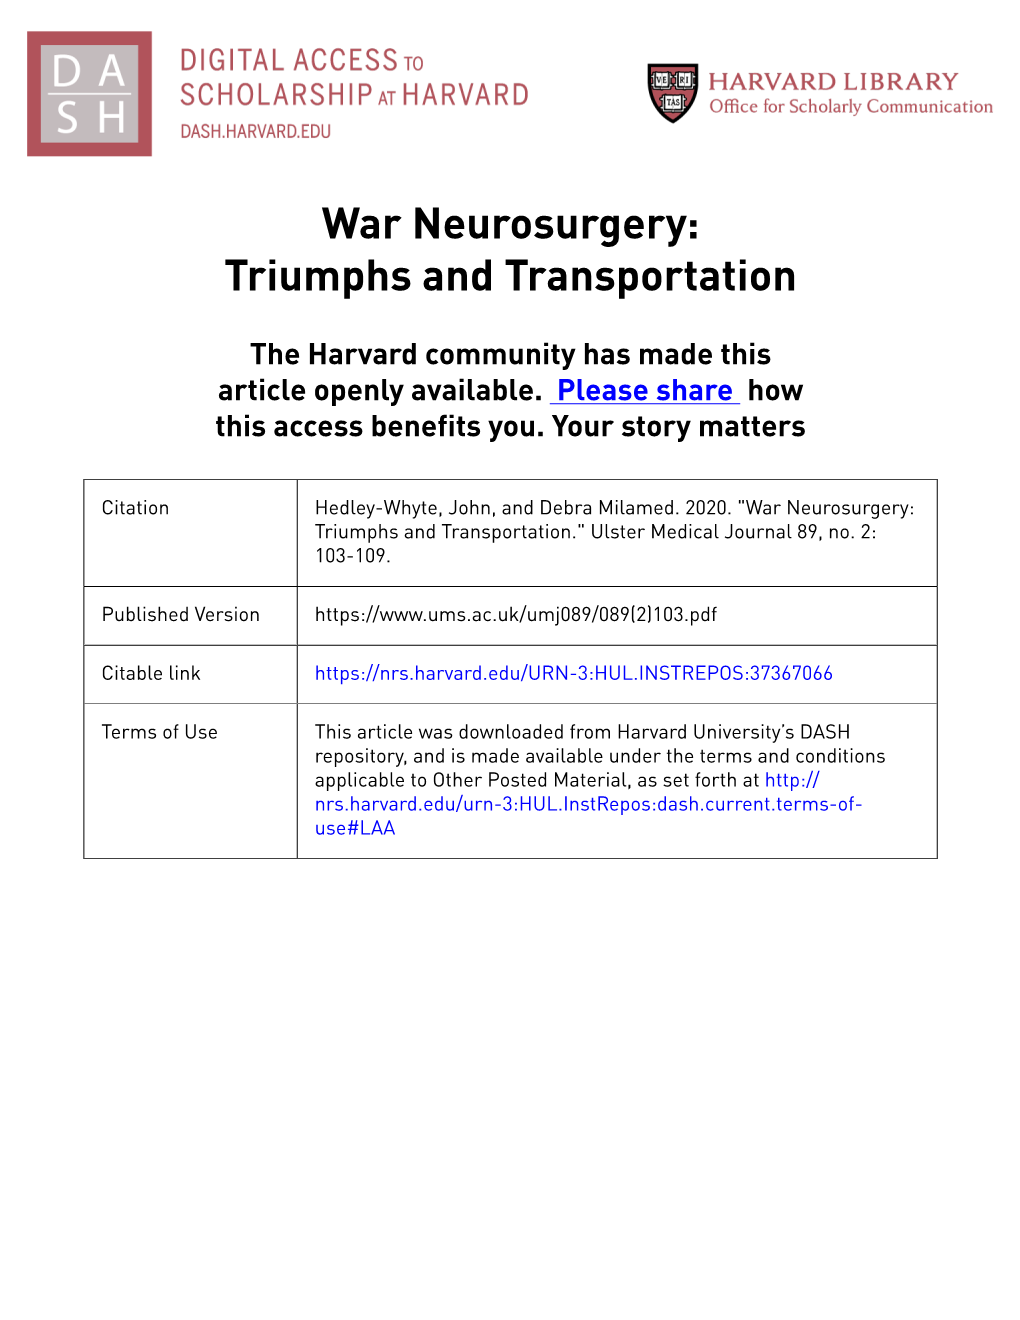 War Neurosurgery: Triumphs and Transportation